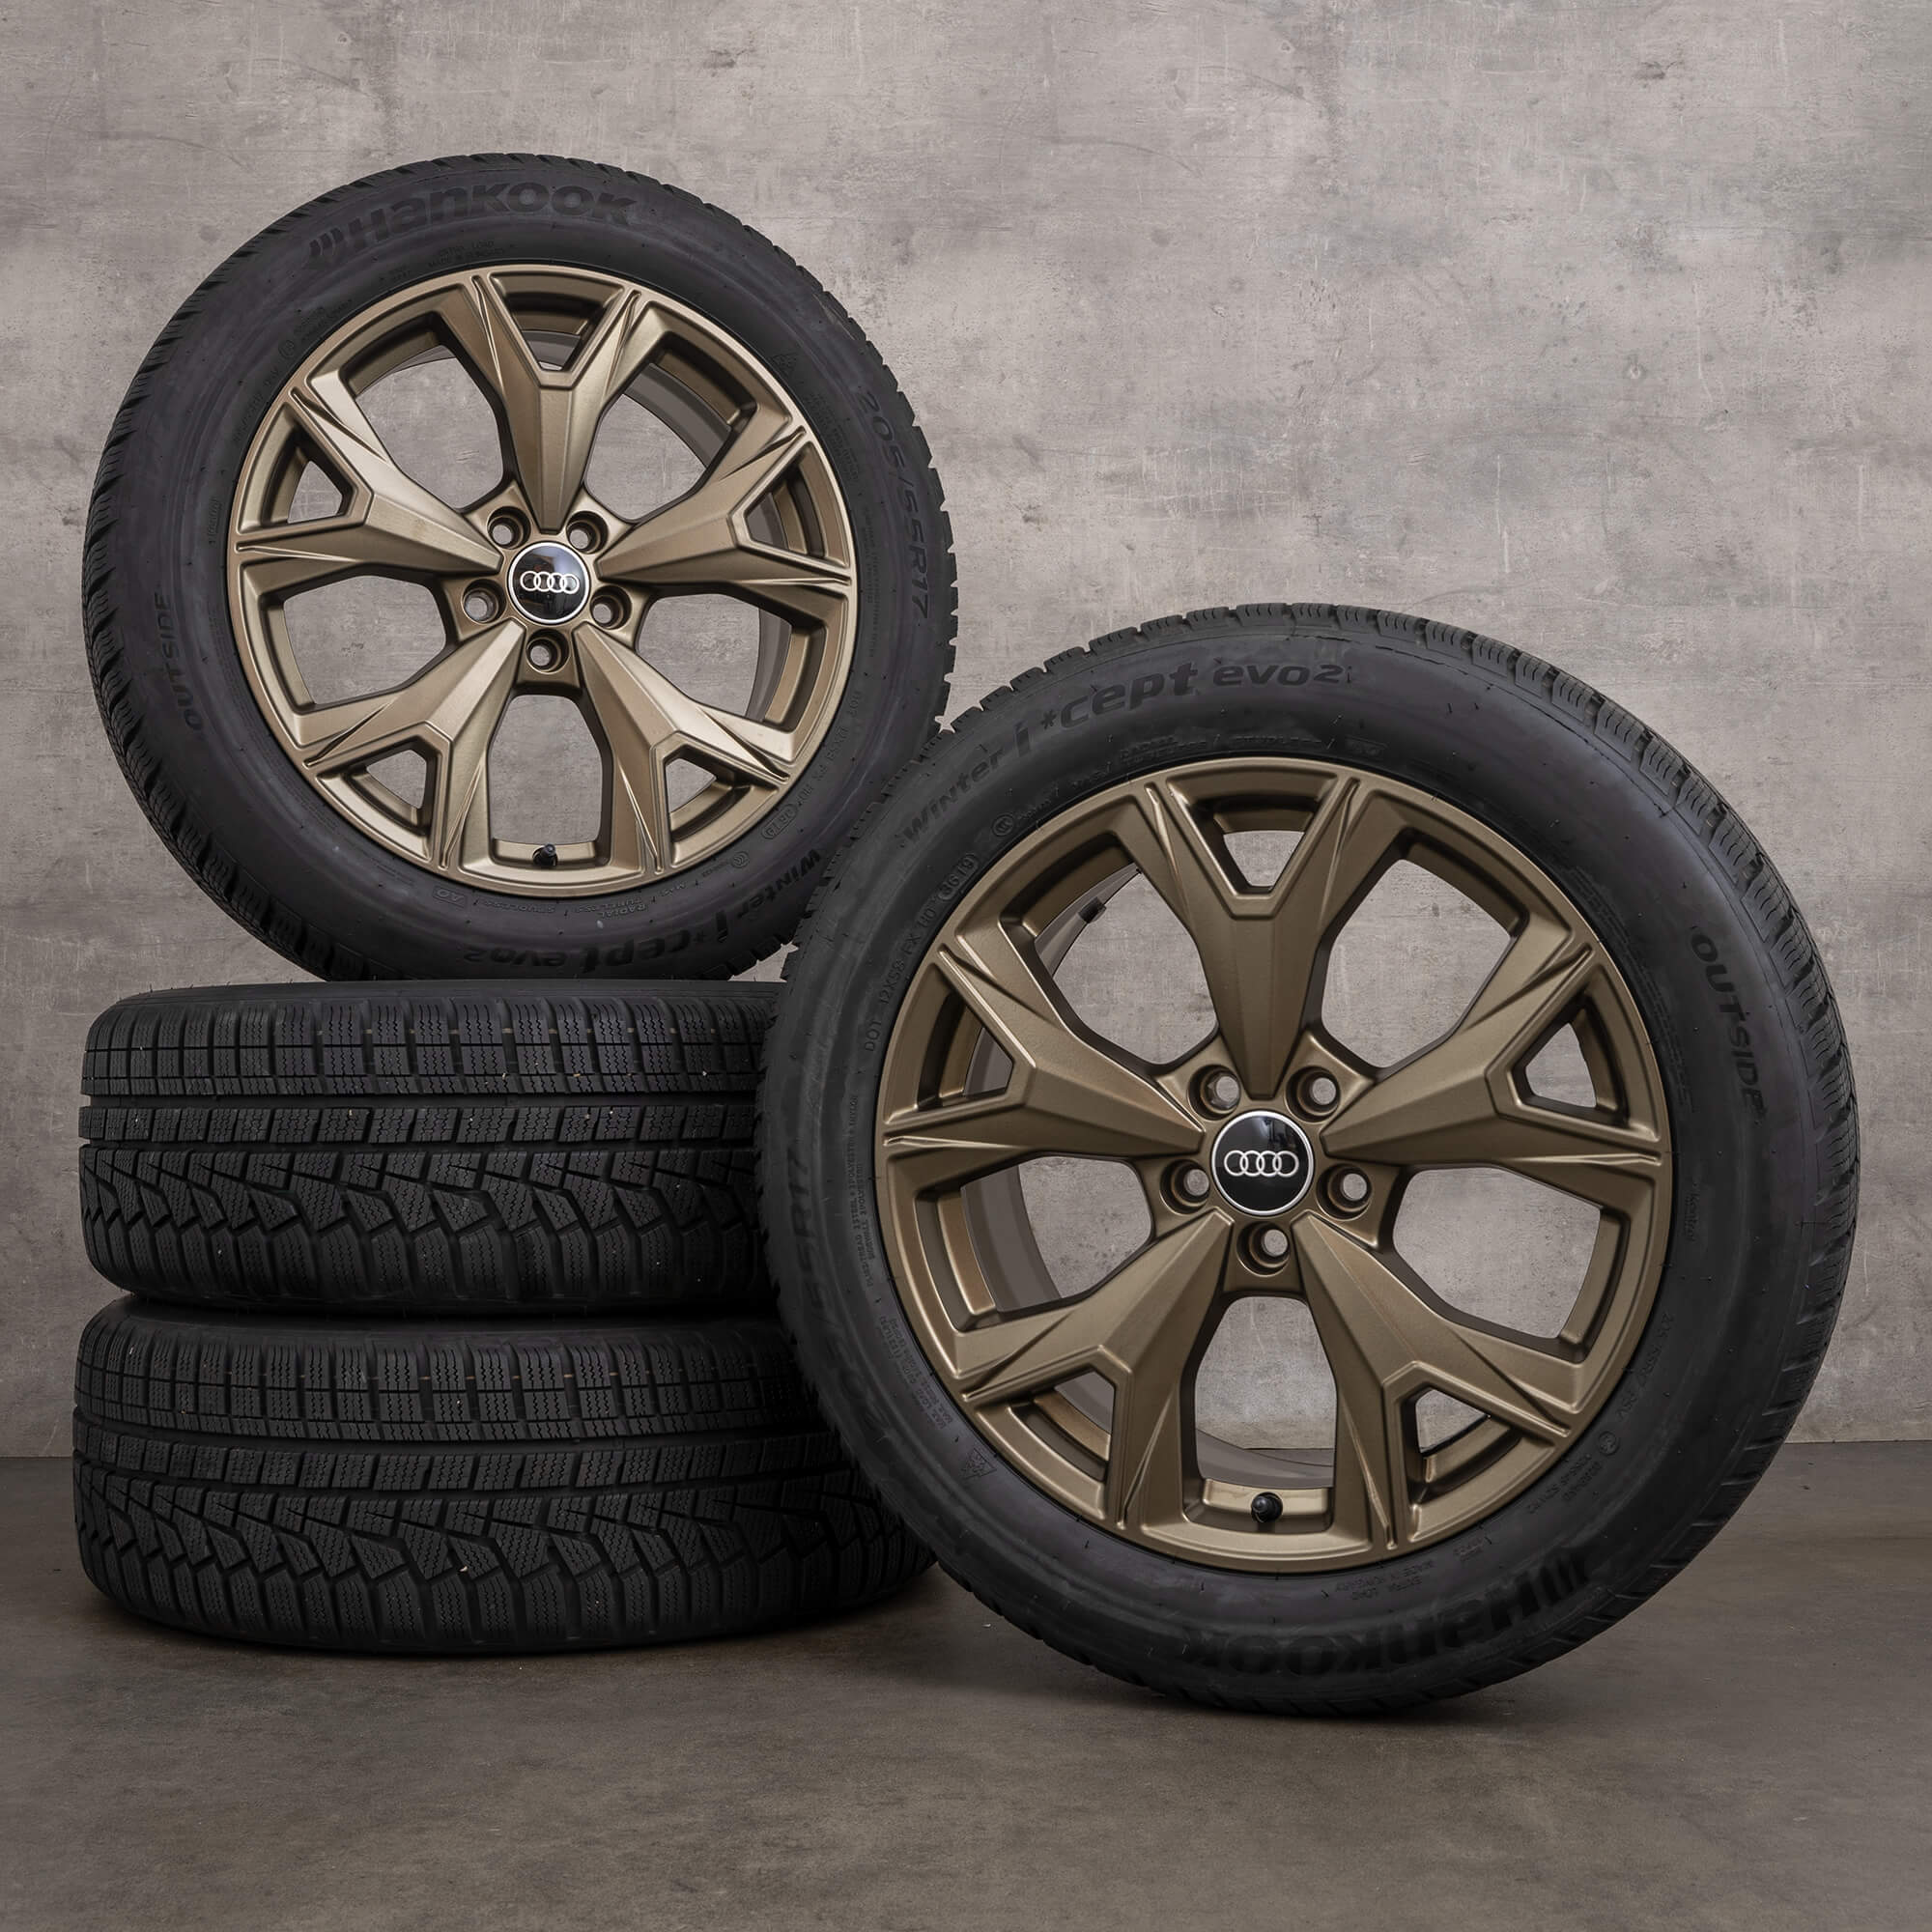 Audi A1 GB Citycarver rodas de inverno pneus jantes 17 polegadas 82A601025S